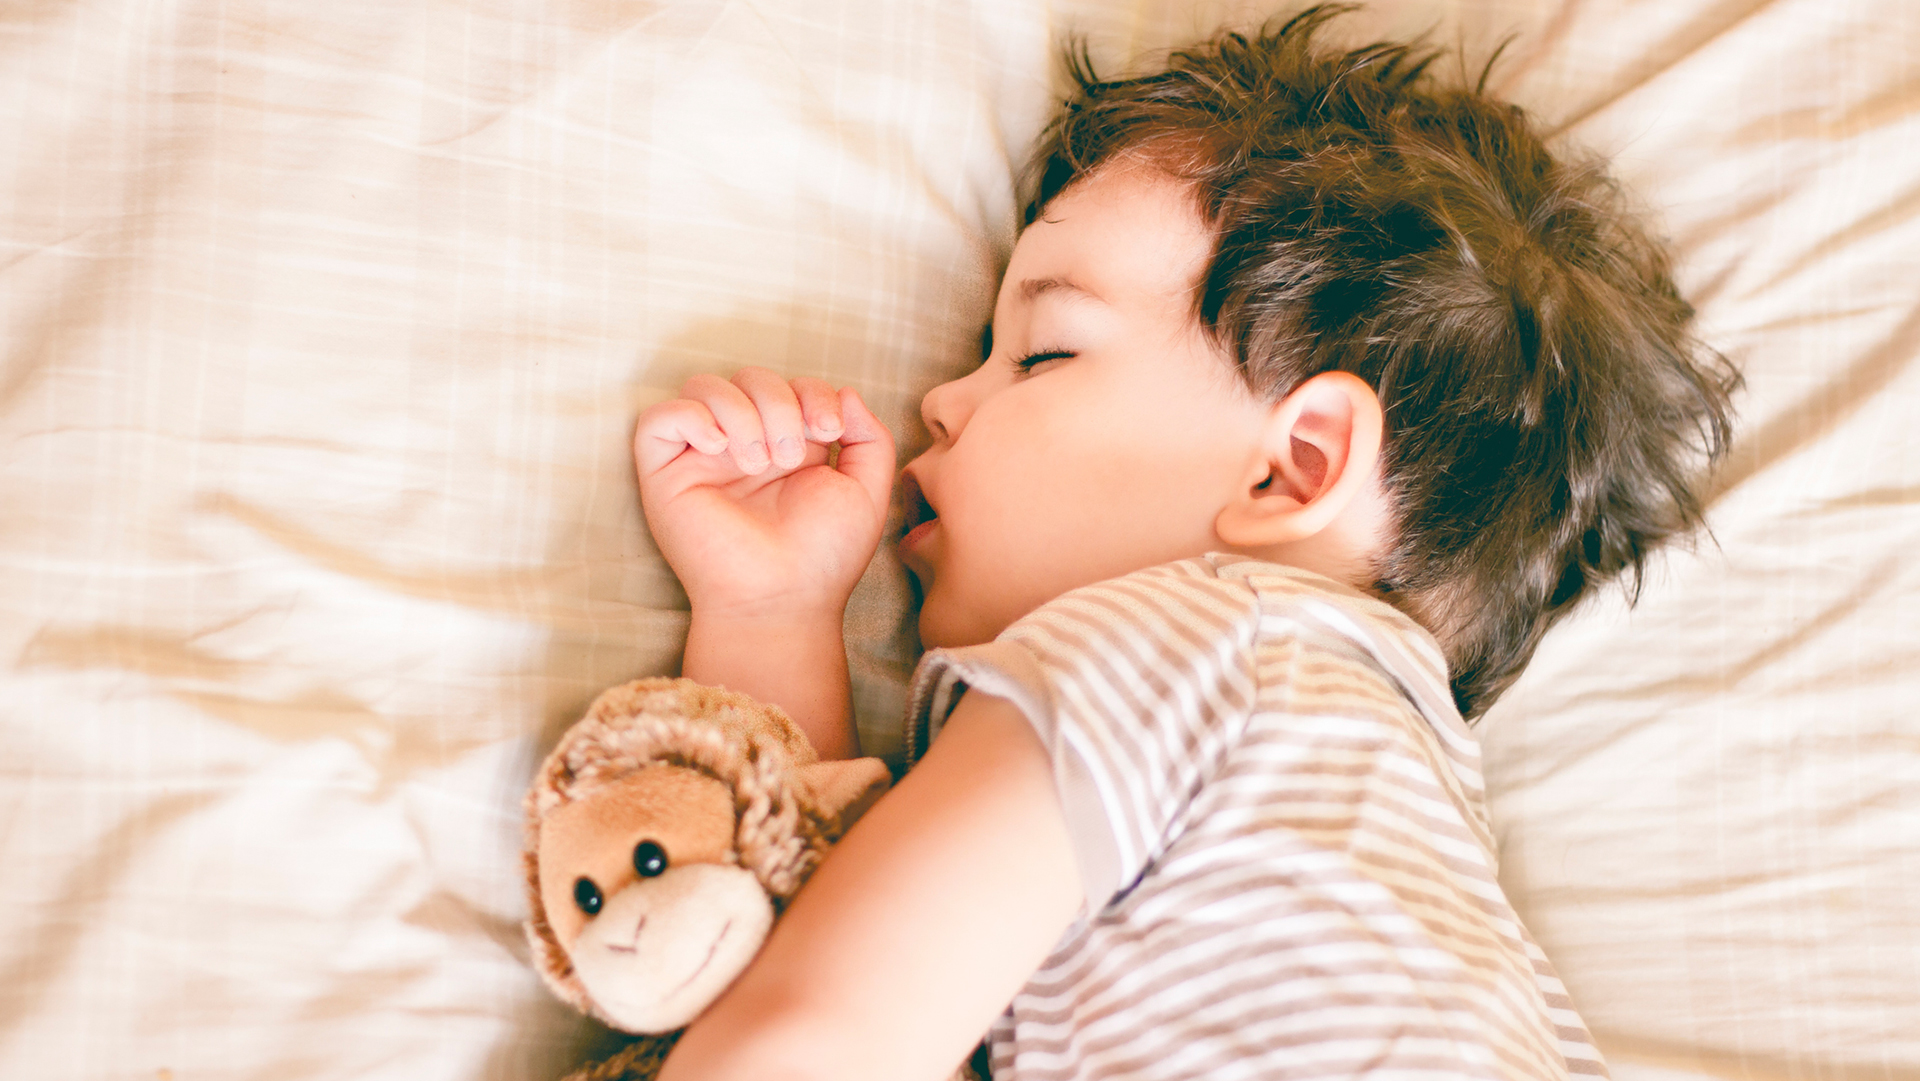 La Academia Estadounidense de Pediatría actualizó en 2022 sus pautas de sueño seguro para los bebés (Getty)